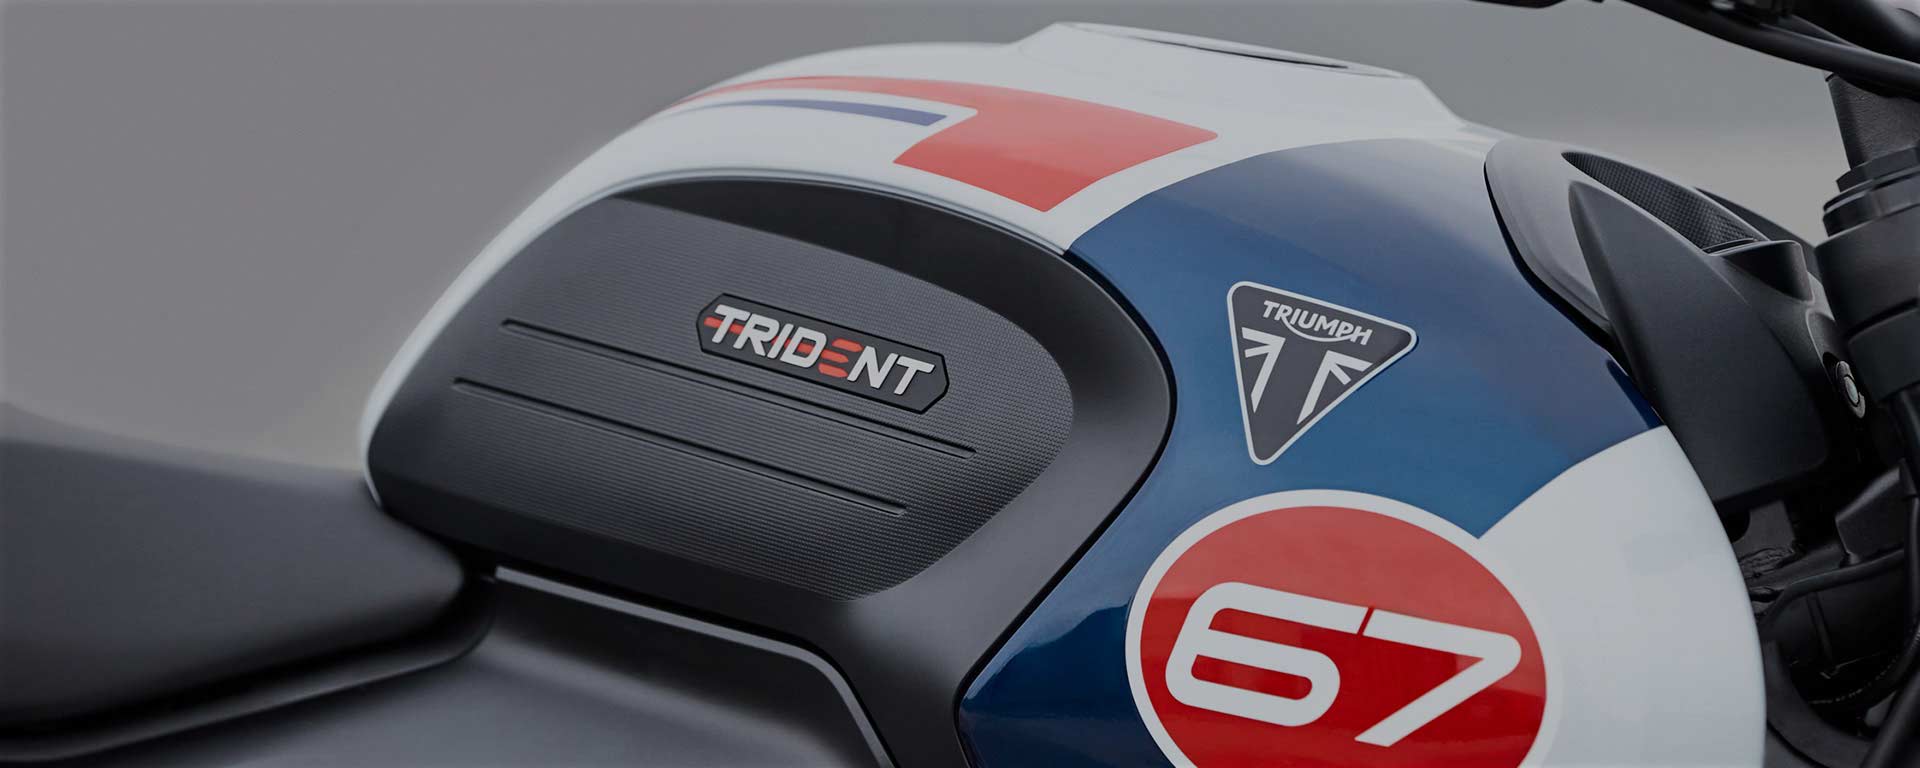 New Triumph Trident 660 Triple Tribute Edition Tank Design)